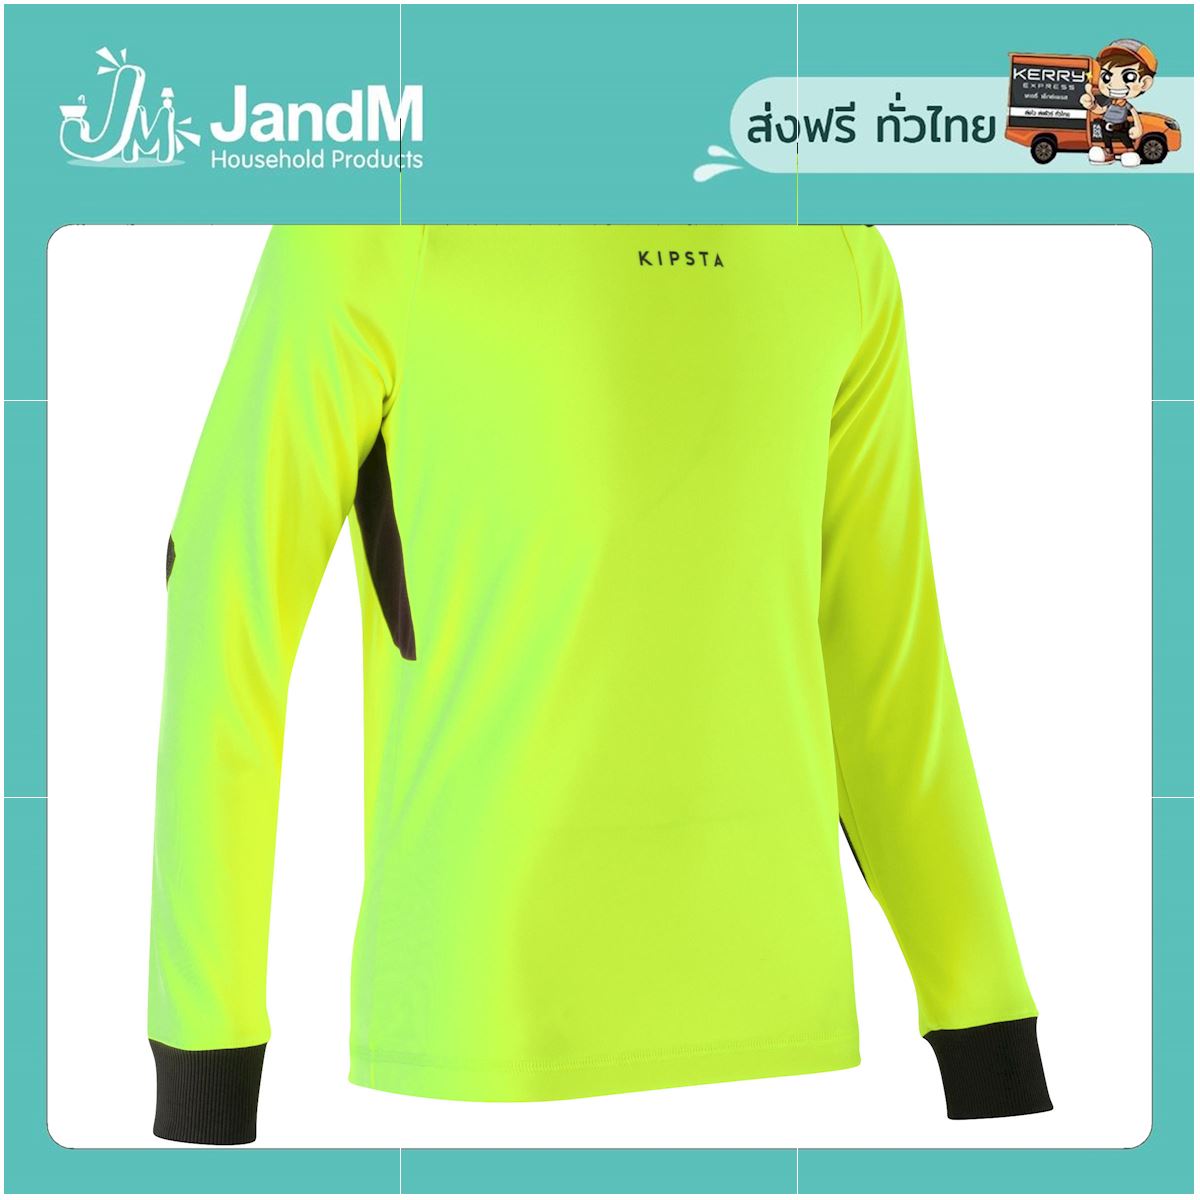 JandM เสื้อเจอร์ซีย์ผู้รักษาประตูสำหรับเด็กรุ่น F100 (สีเหลือง) ส่งkerry มีเก็บเงินปลายทาง